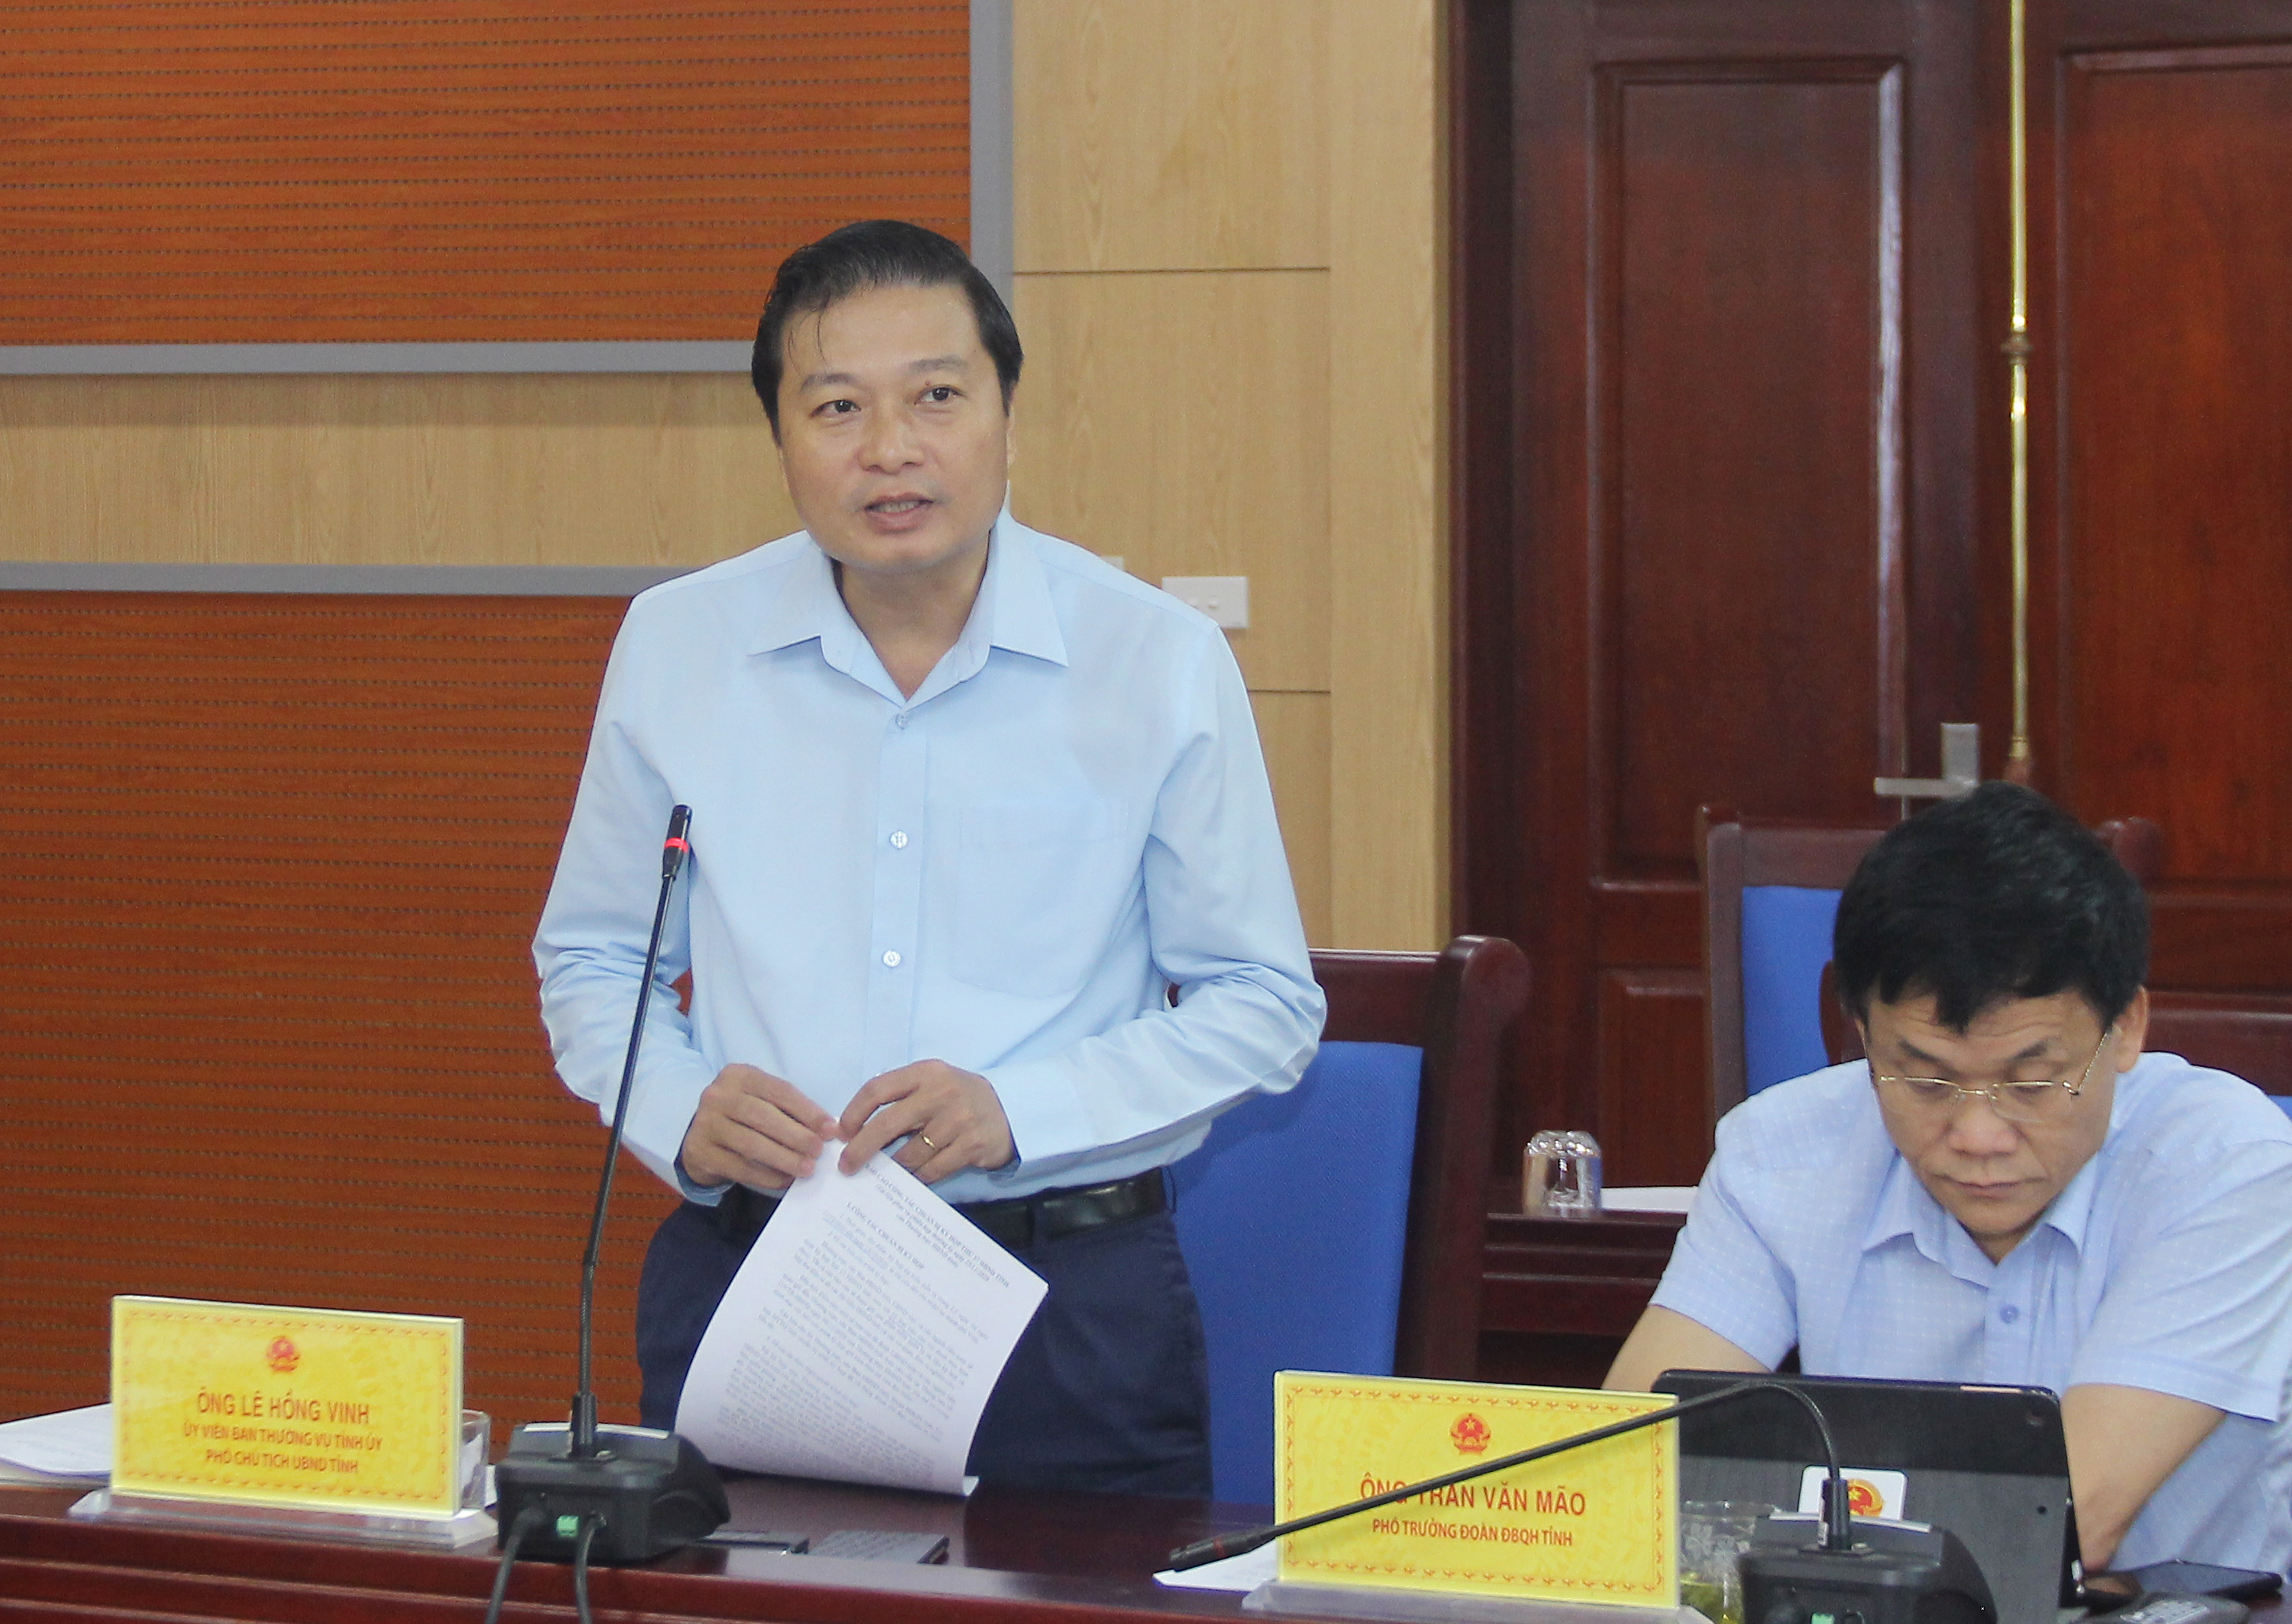 Đồng chí Lê Hồng Vinh - Phó Chủ tịch Thường trực UBND tỉnh thừa nhận trong quá trình triển khai thực hiện một số dự án di dân tái định cư có những tồn tại, hạn chế. Ảnh: Mai Hoa